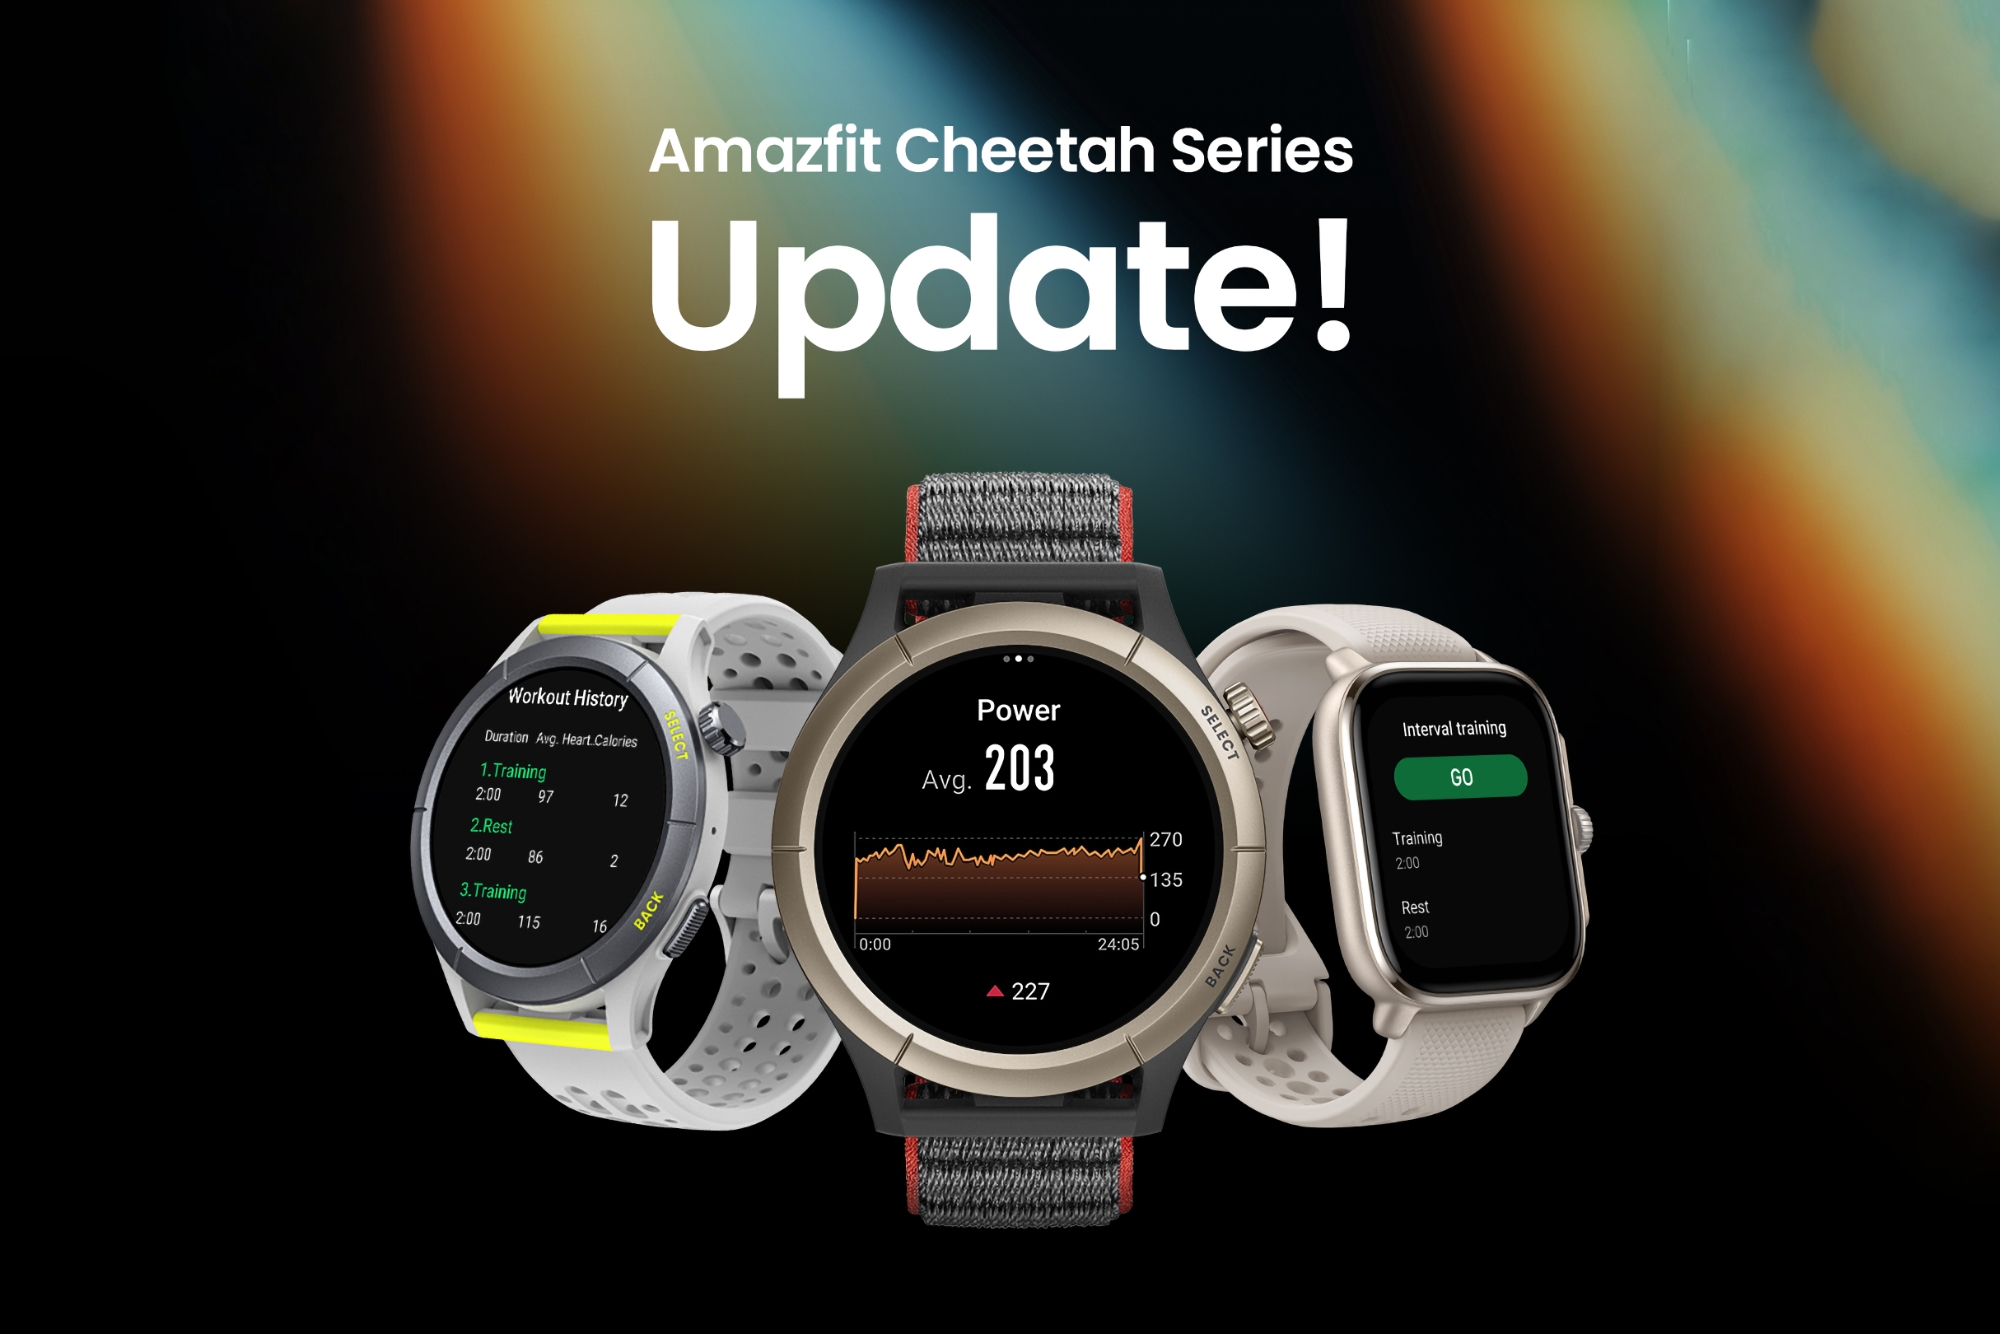 Amazfit Cheetah recibe nuevas funciones con la actualización de software